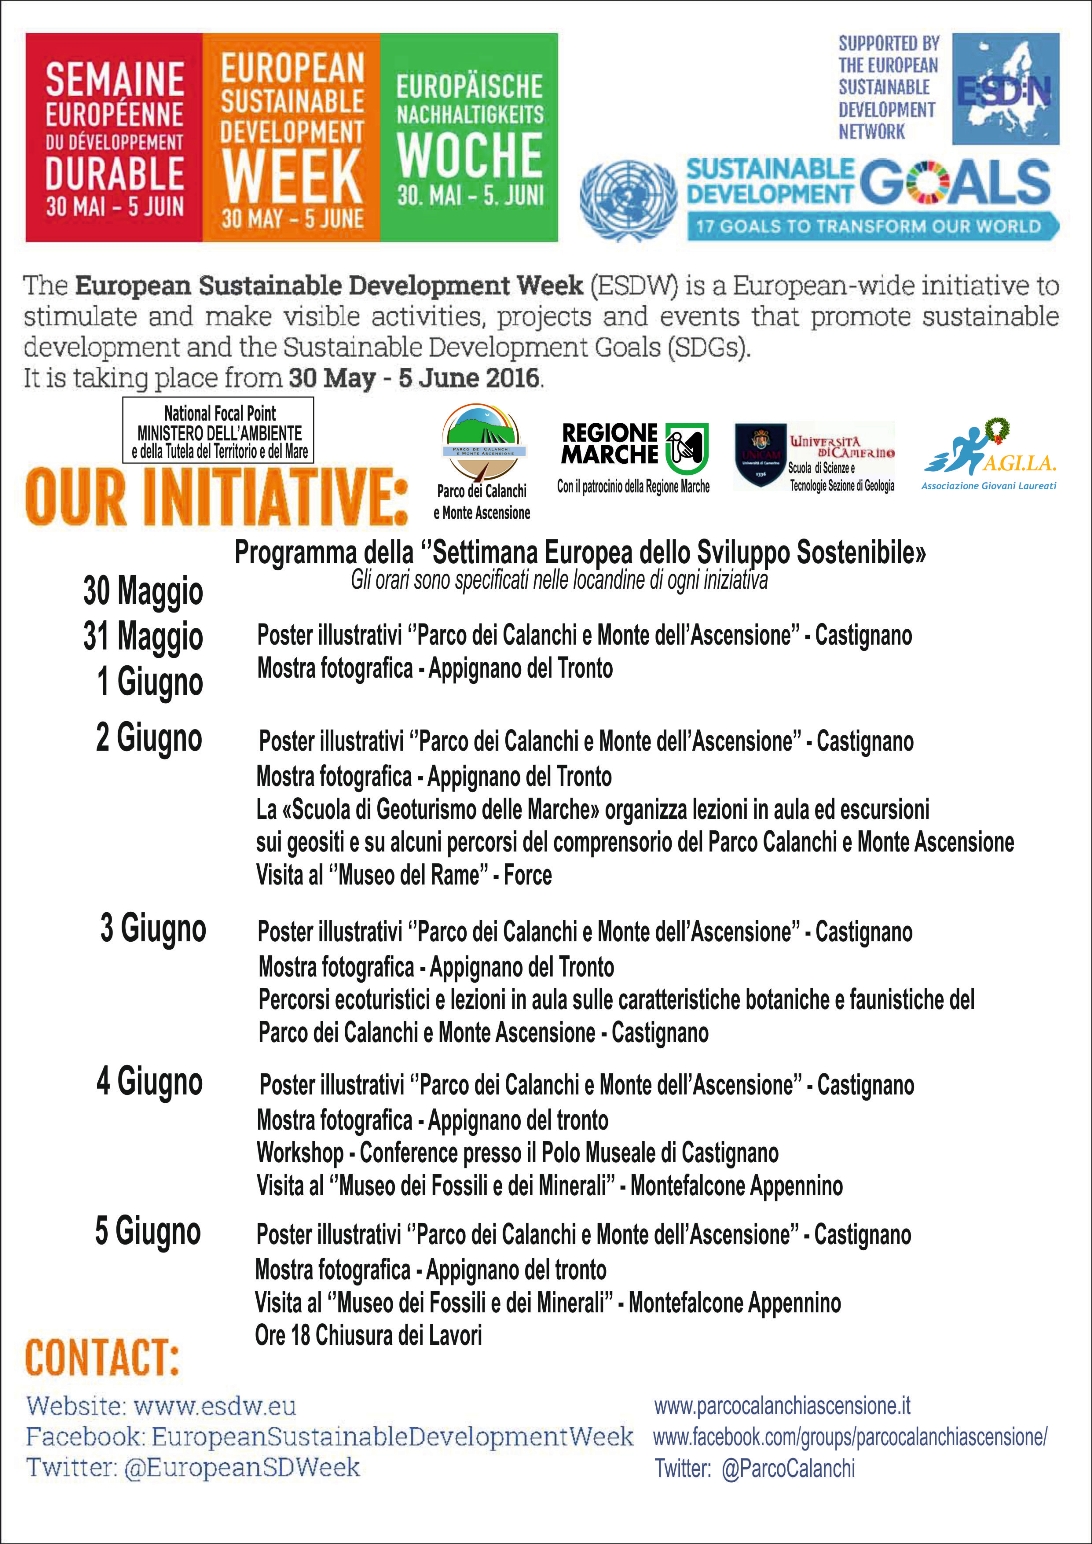 ESDW - Programma della Settimana Europea dello Sviluppo Sostenibile organizzata dal Parco dei Calanchi e Monte Ascensione